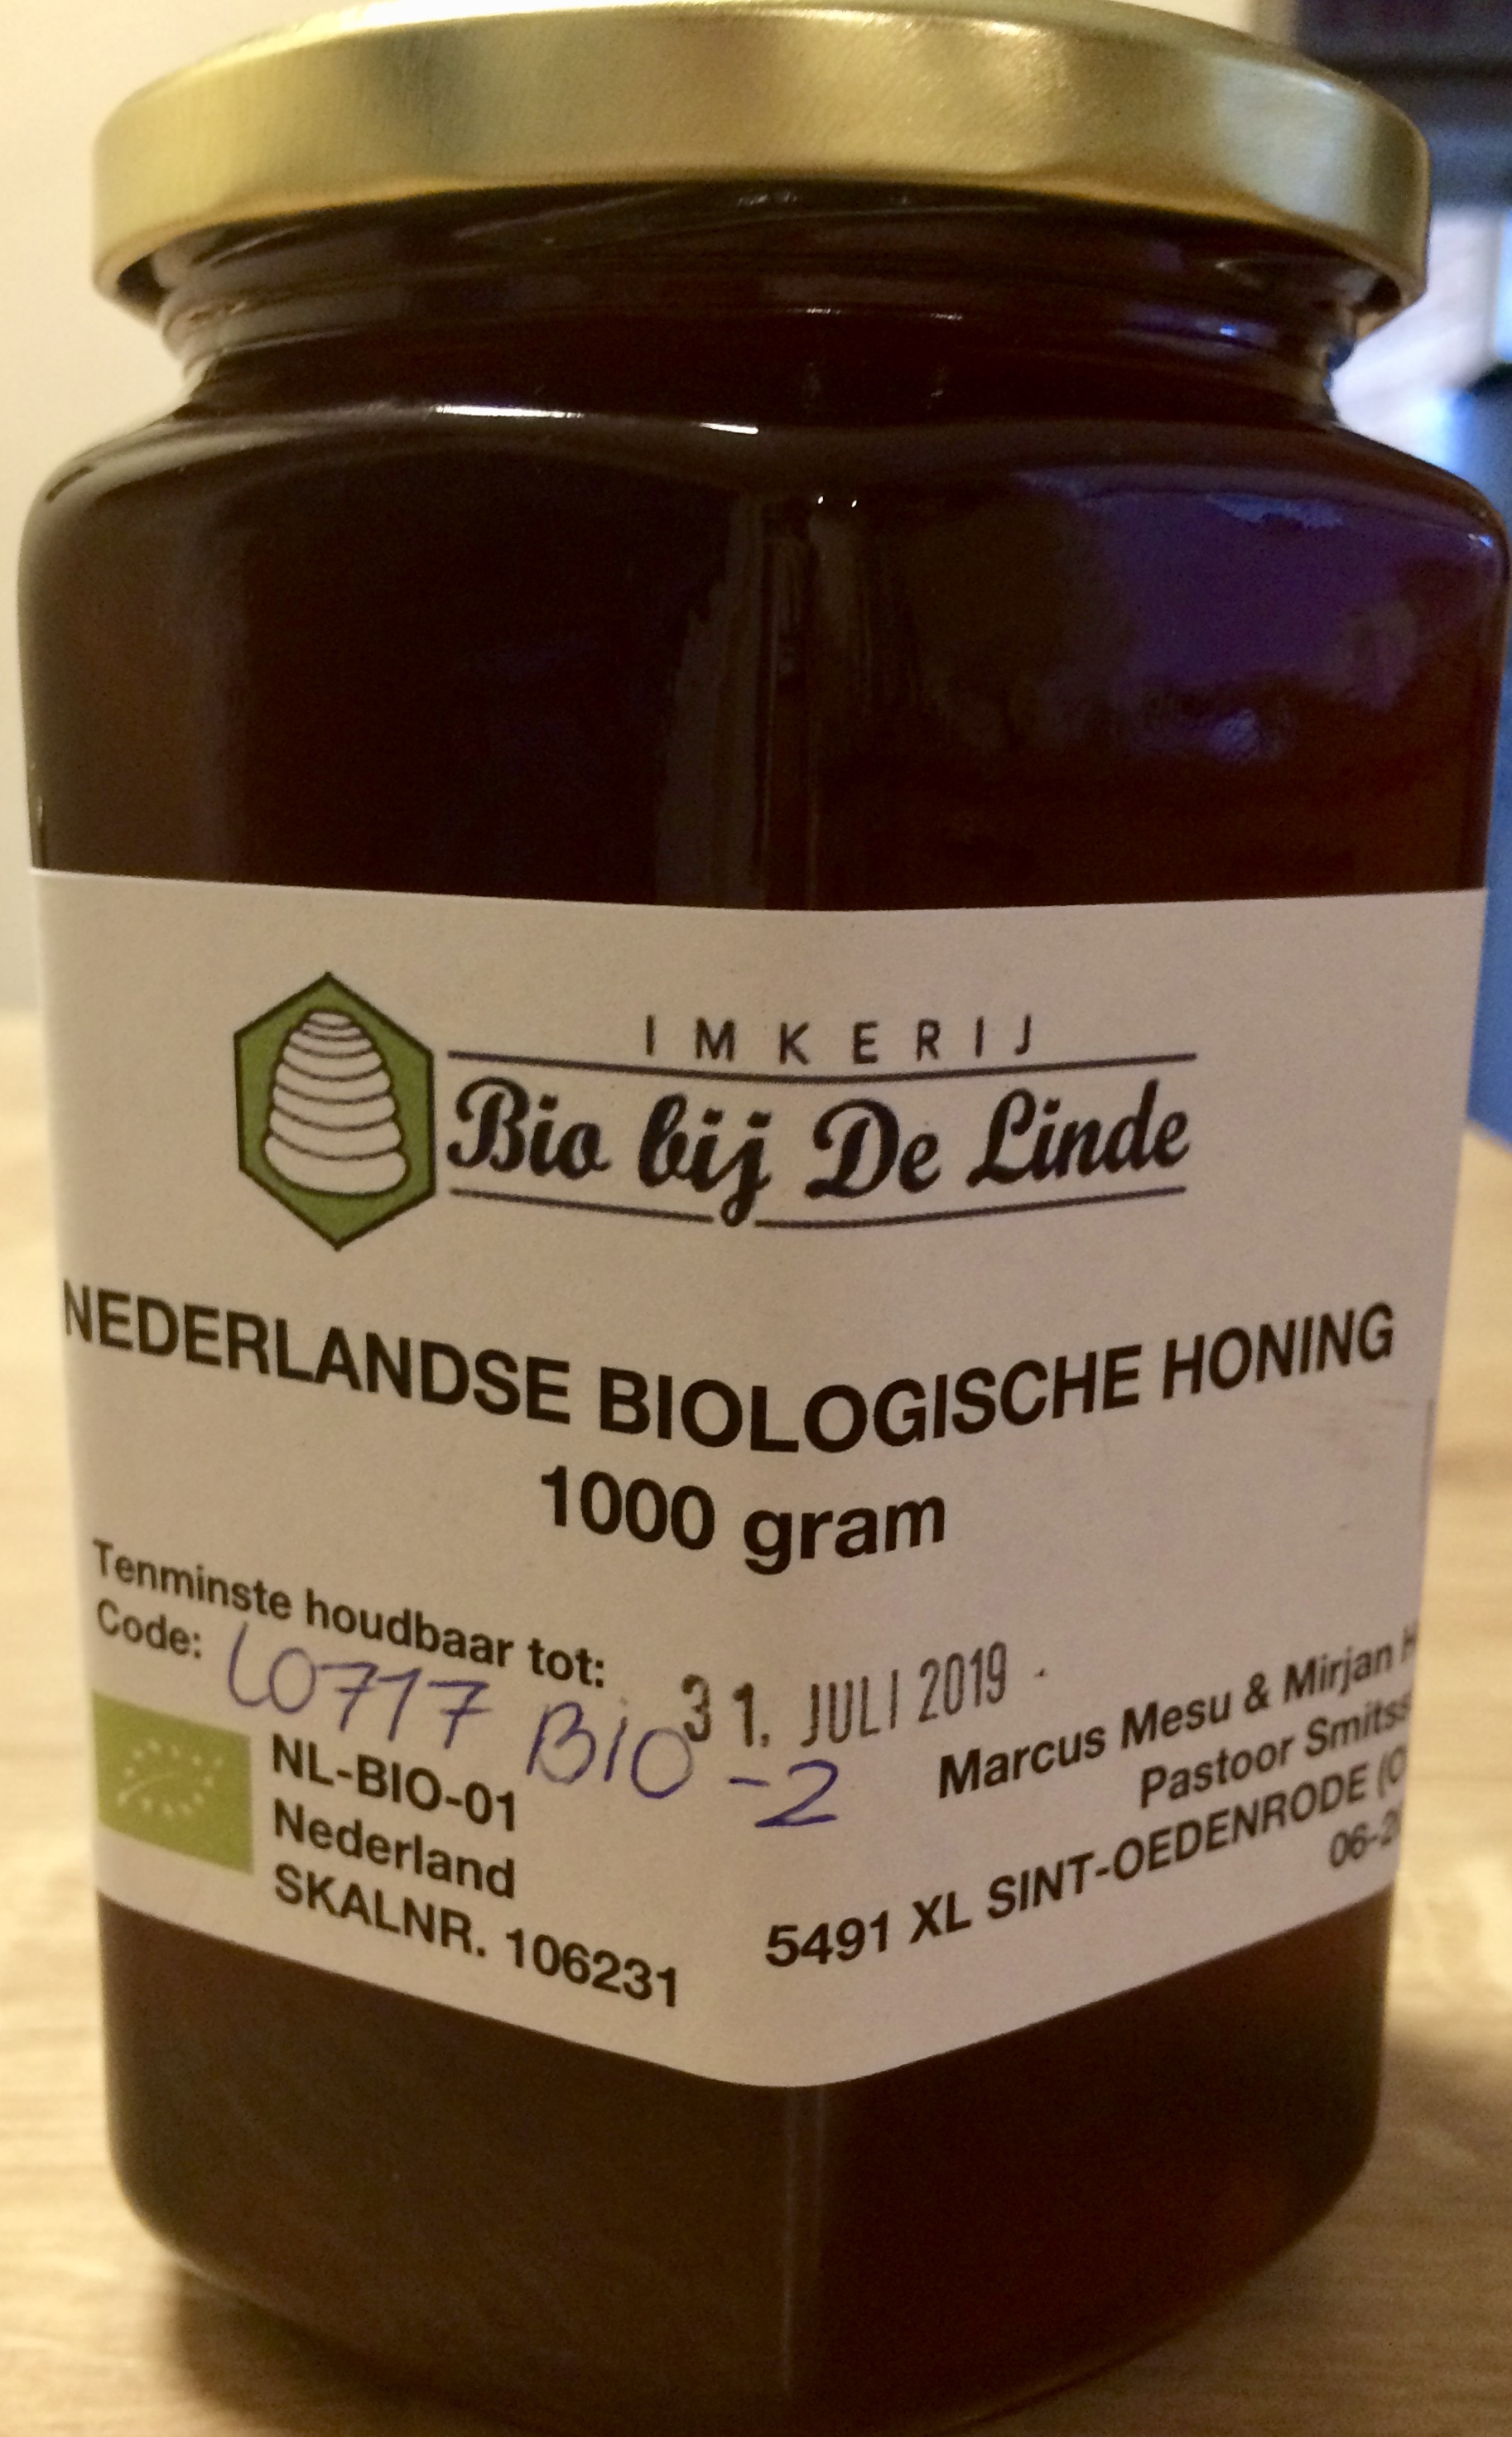 Nederlandse Biologische honing 1000 gram kopen bij Imkerij De Linde